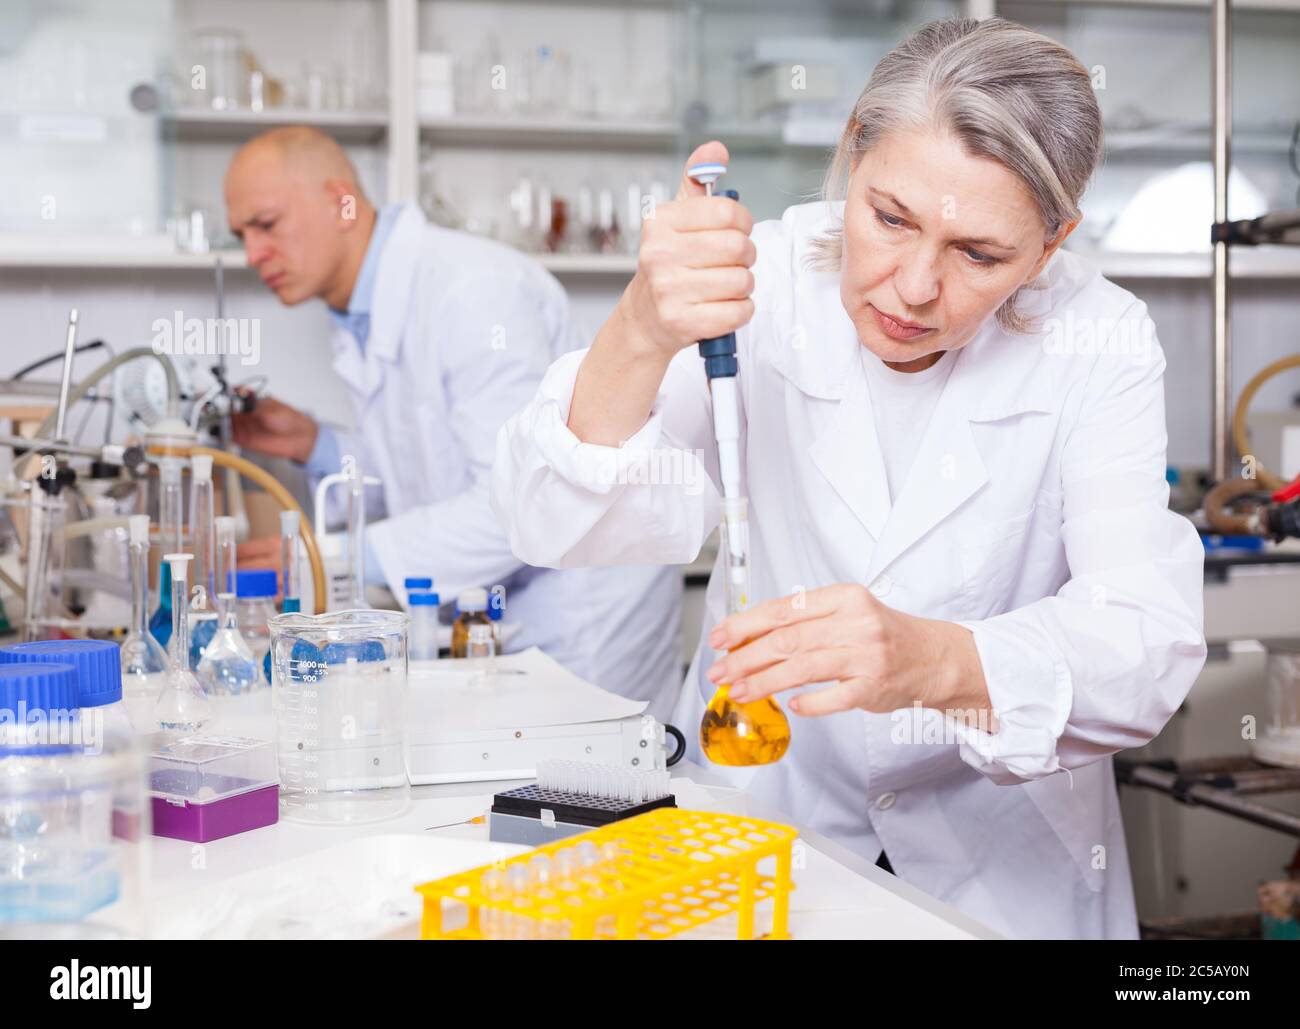 Professionelle Chemikerin, die im Labor arbeitet und chemische Substanzen während des Experiments mischt Stockfoto